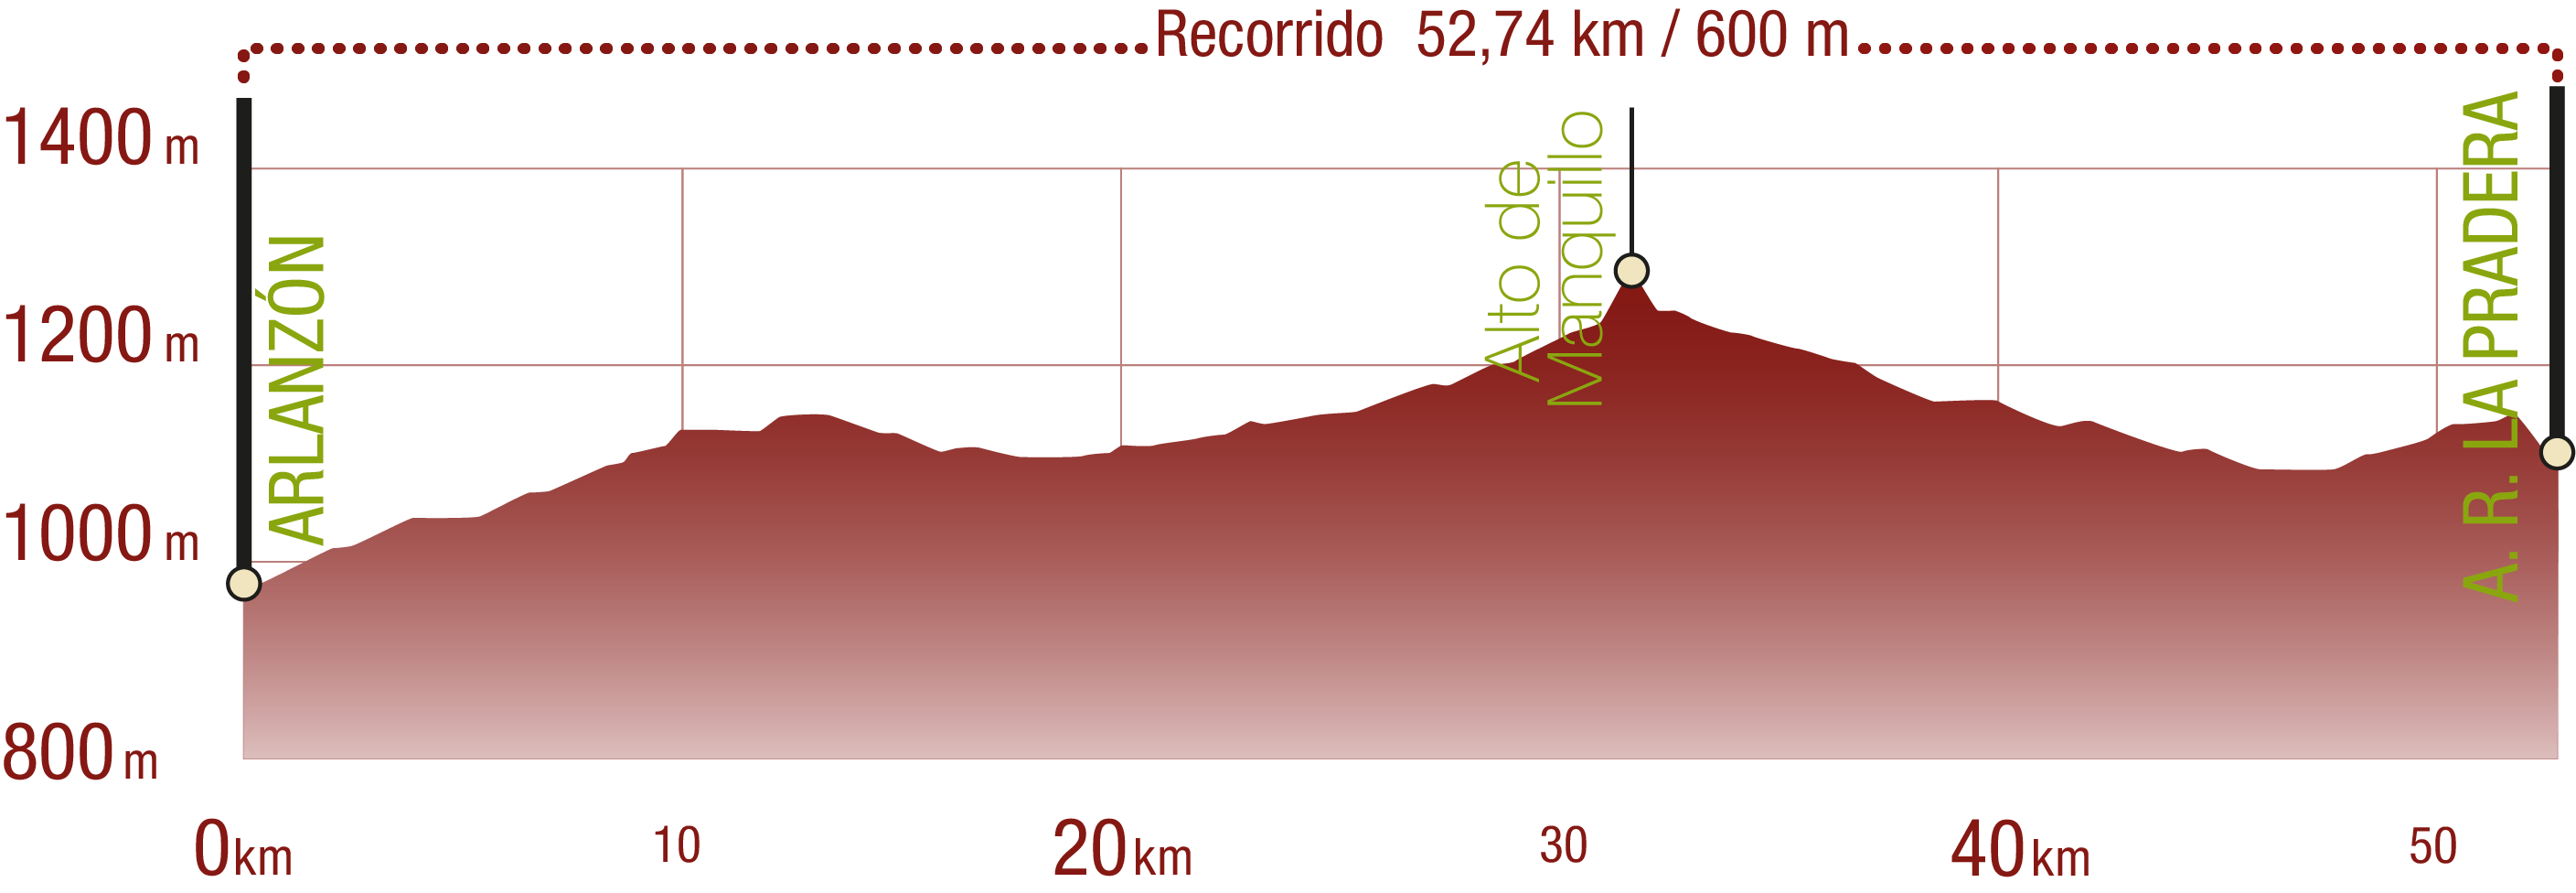 Perfil 
Perfil del recorrido del CN VV de la sierra de La Demanda: 52,74 km / Desnivel de subida 600 m

